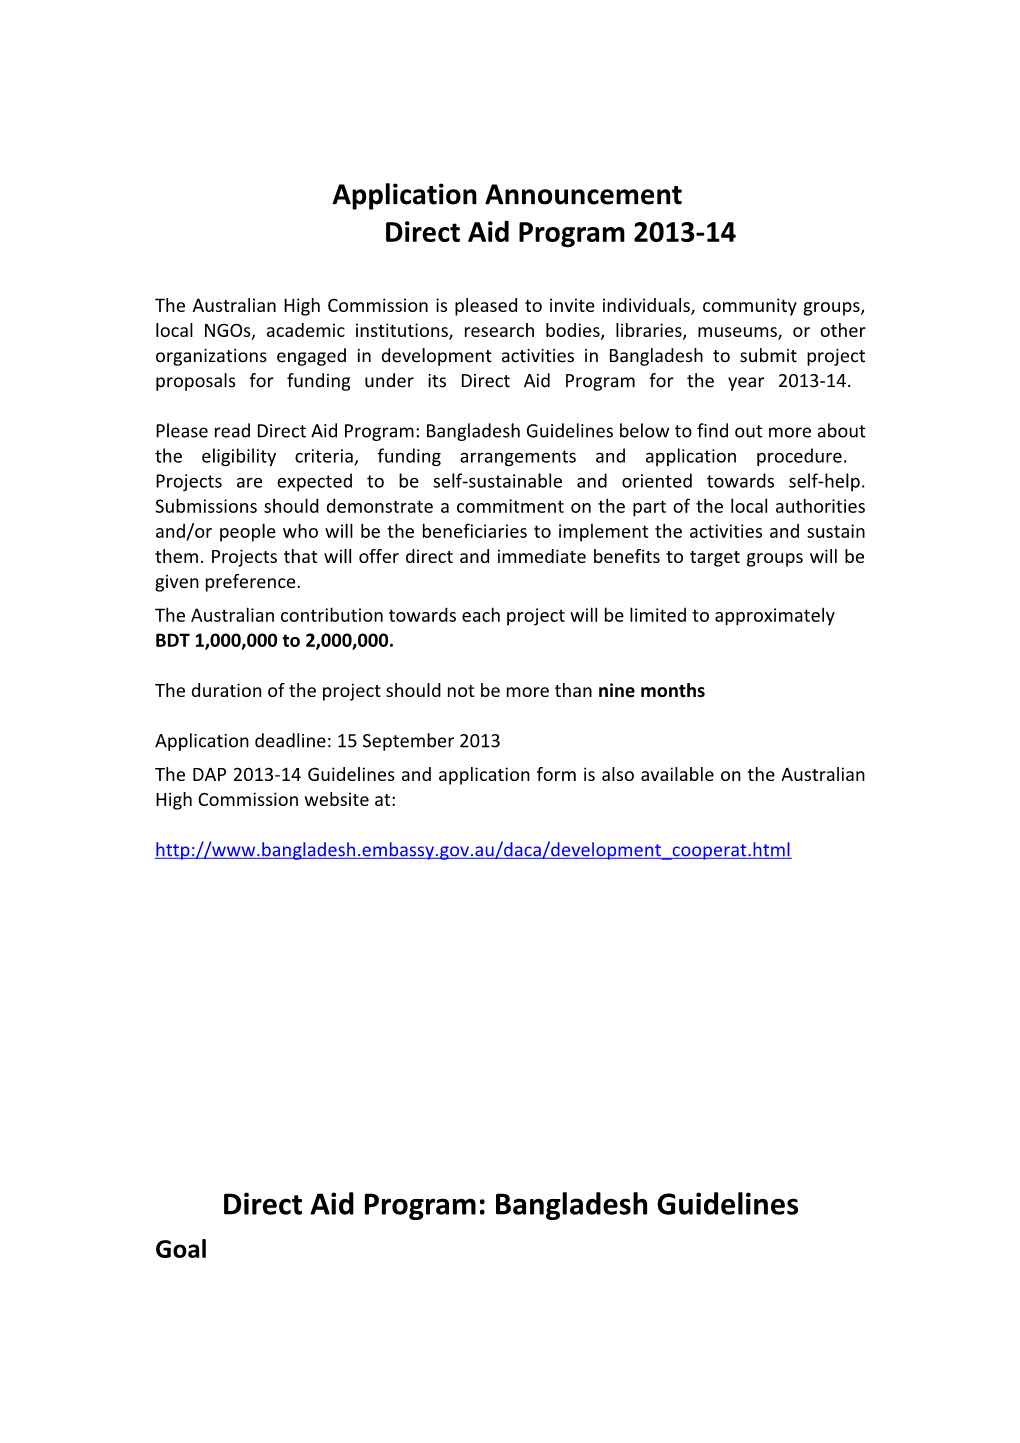 Application Announcement Direct Aid Program 2013-14